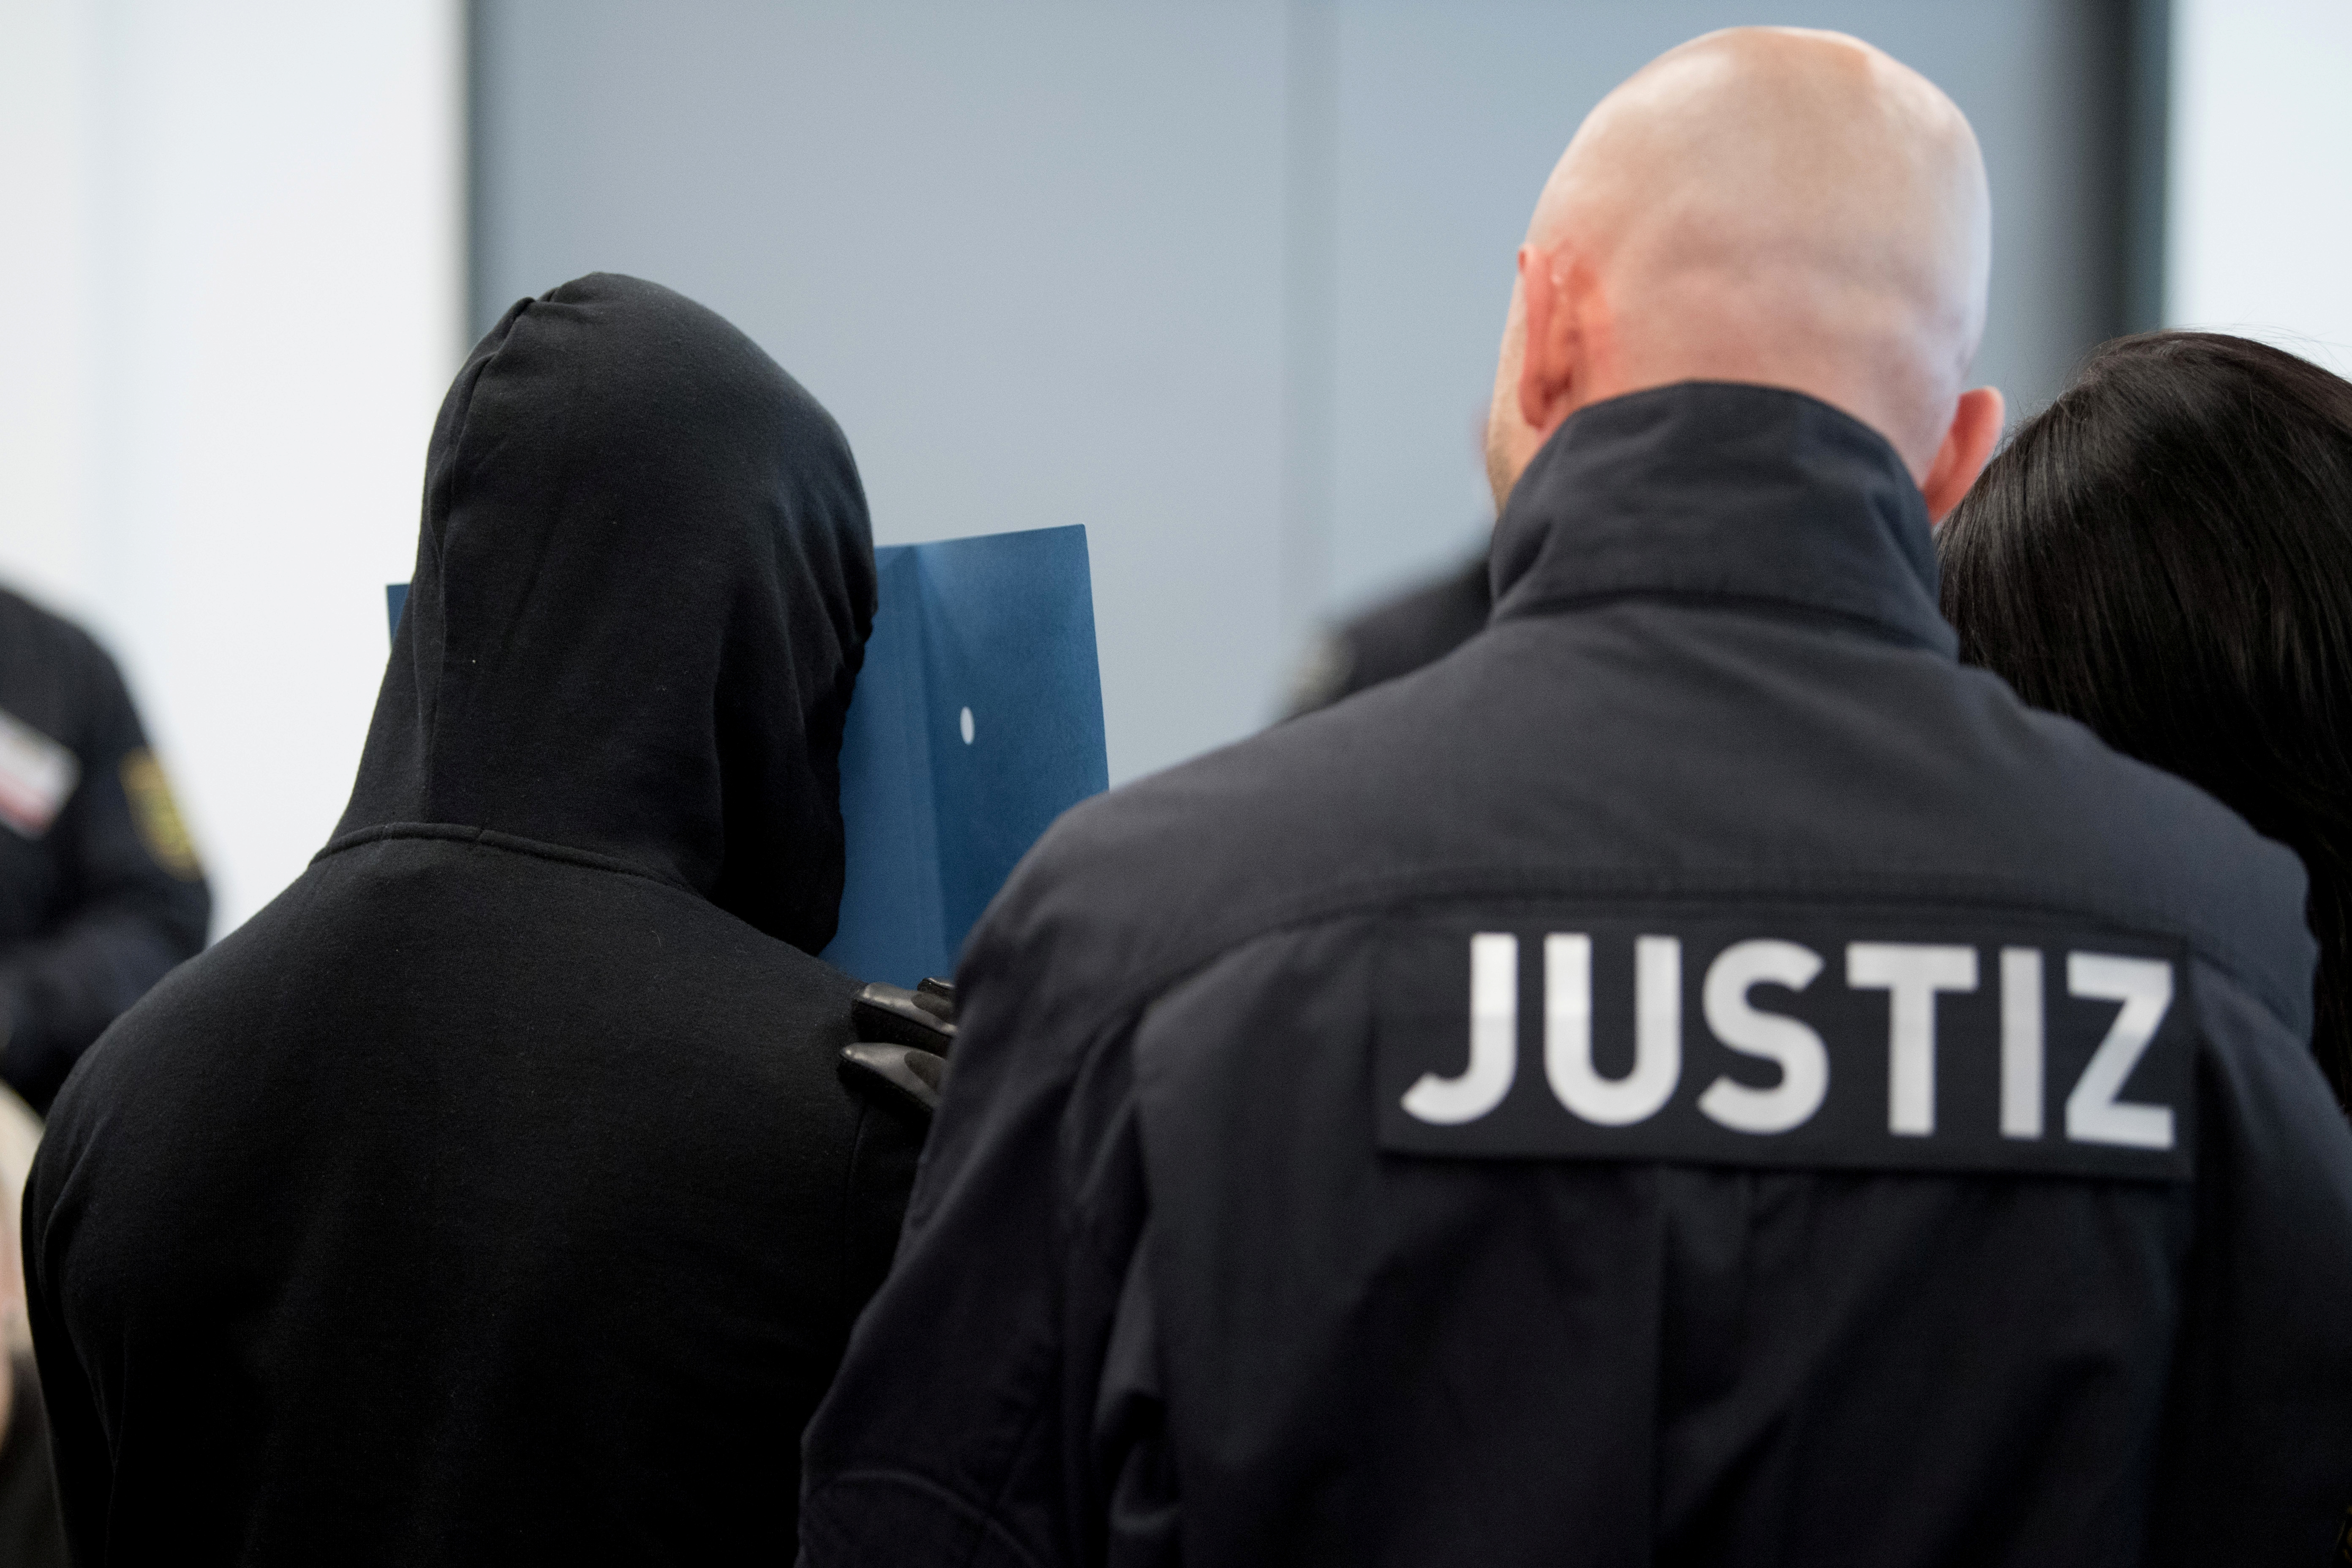 Ξεκινάει η δίκη των νεοναζί! Σχεδίαζαν επιθέσεις σε όλη την Γερμανία